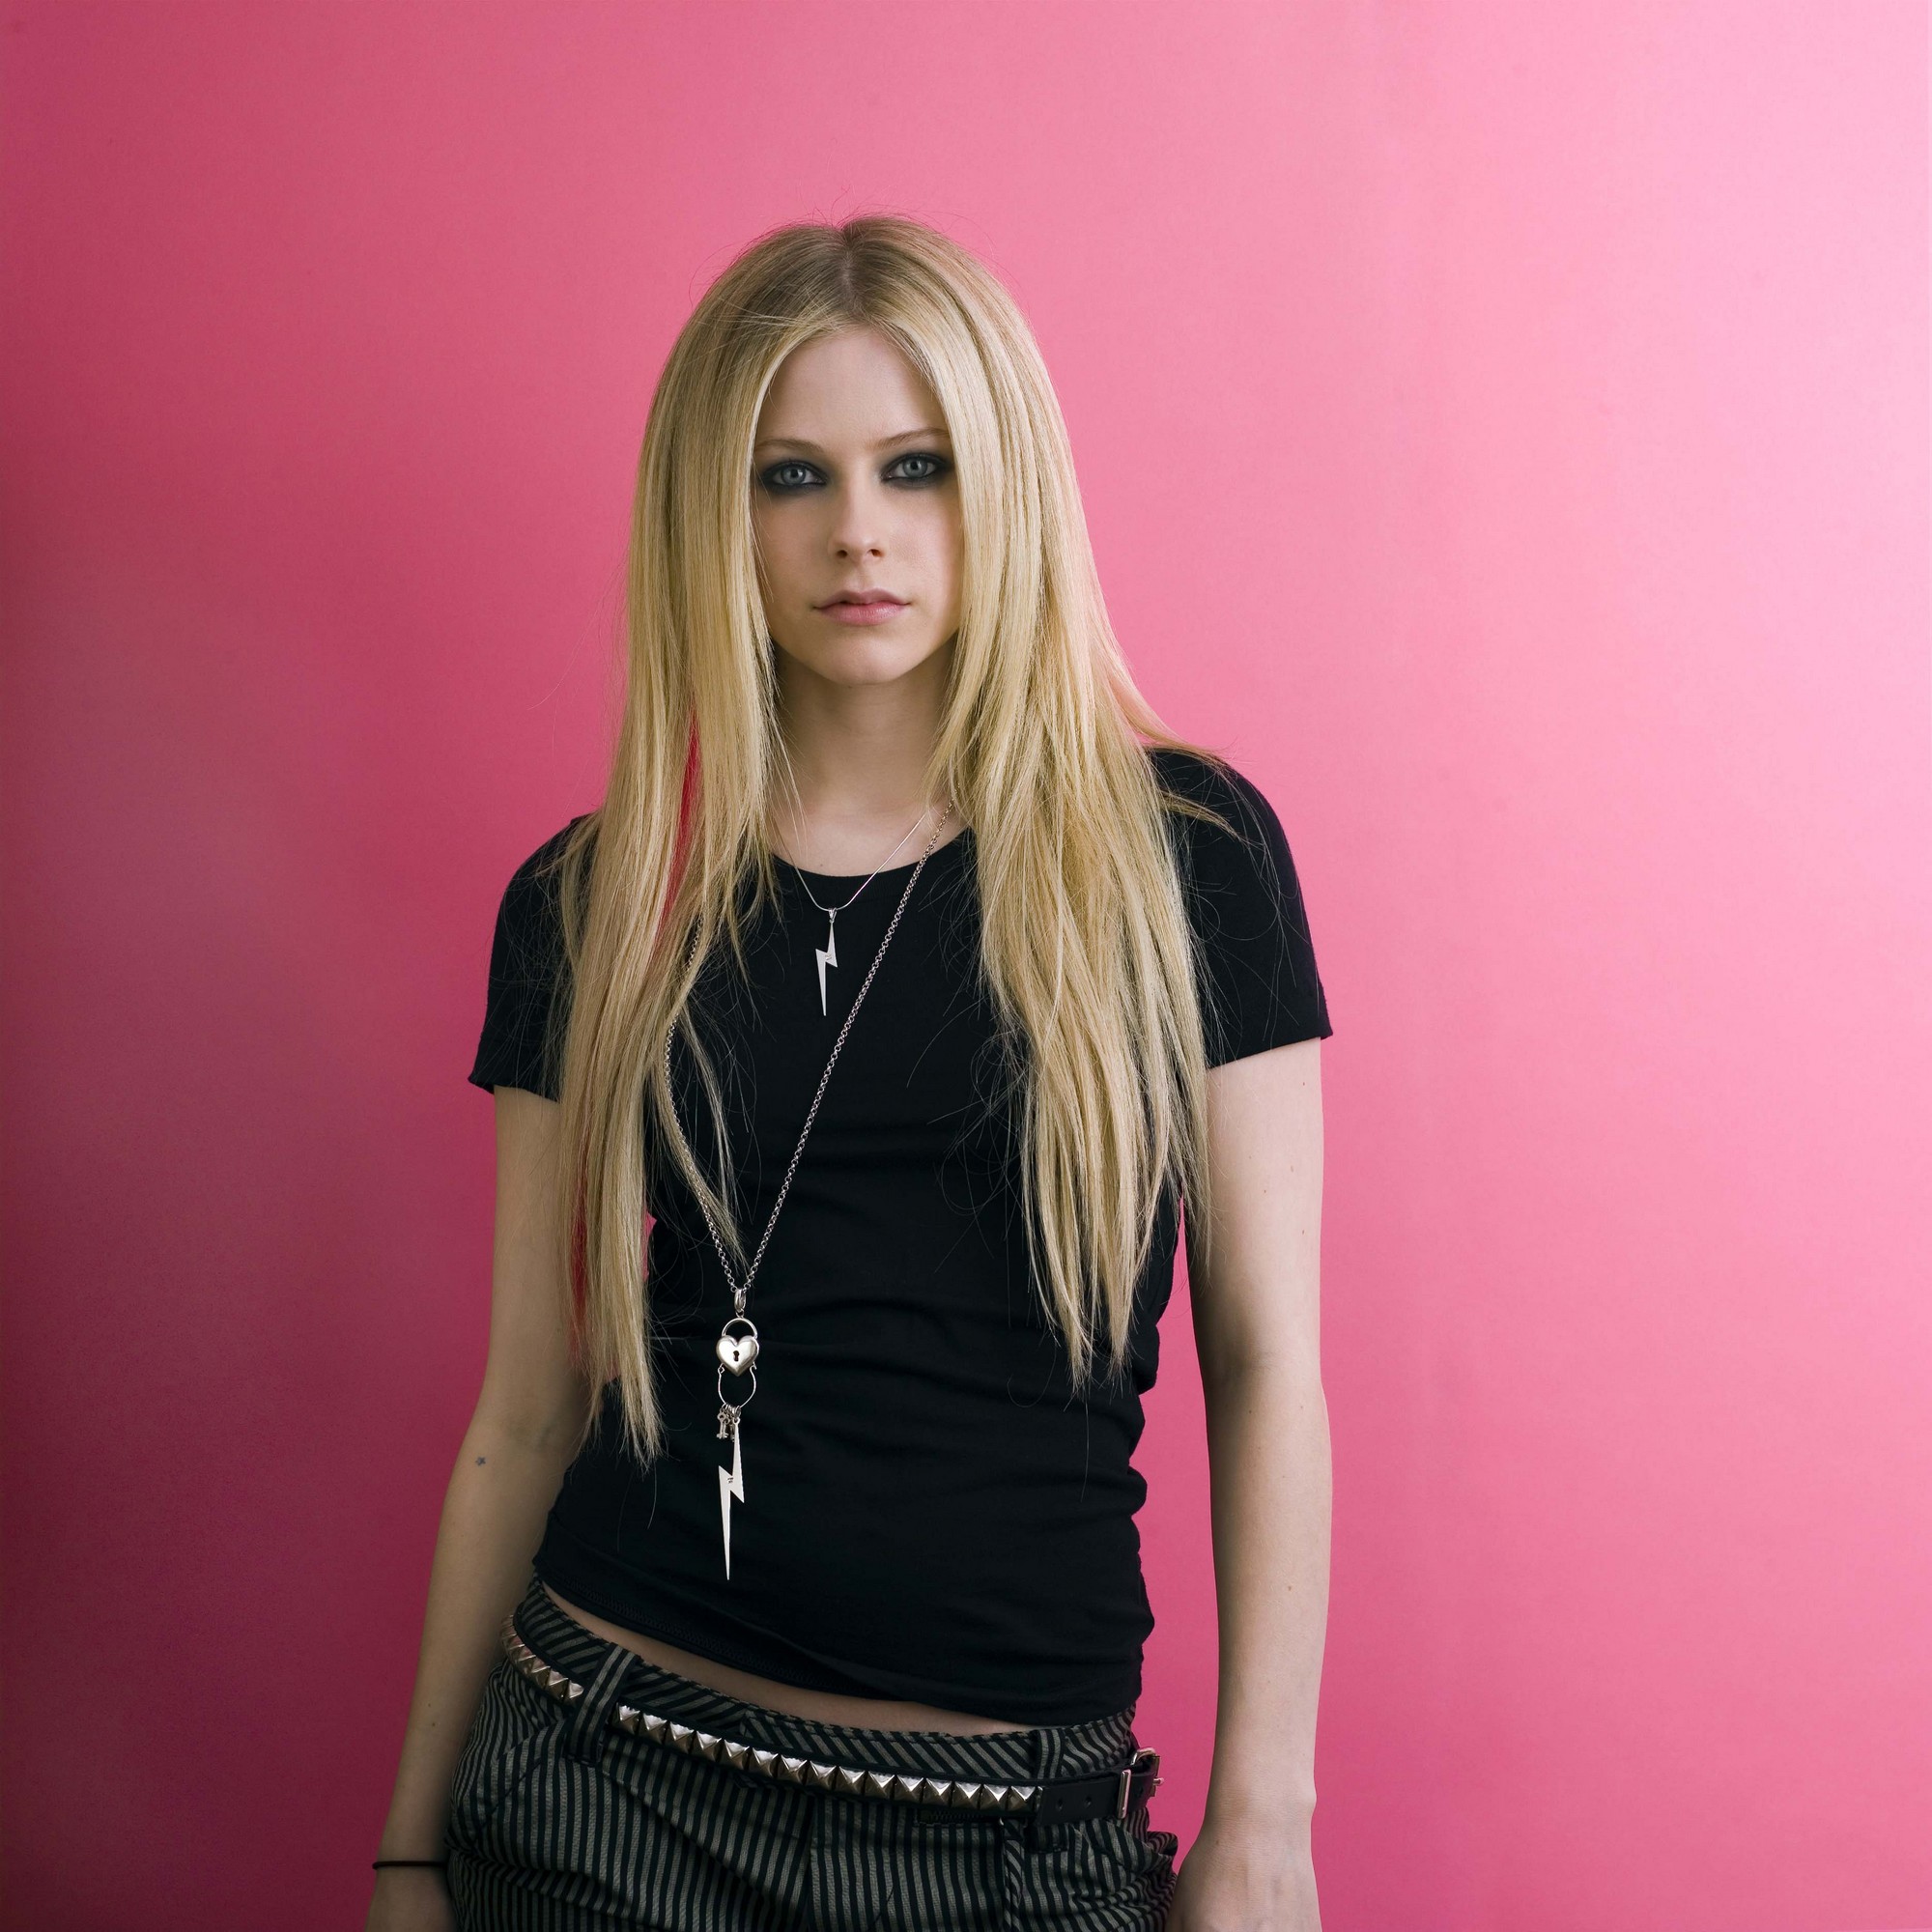 women, Avril Lavigne, celebrity - desktop wallpaper